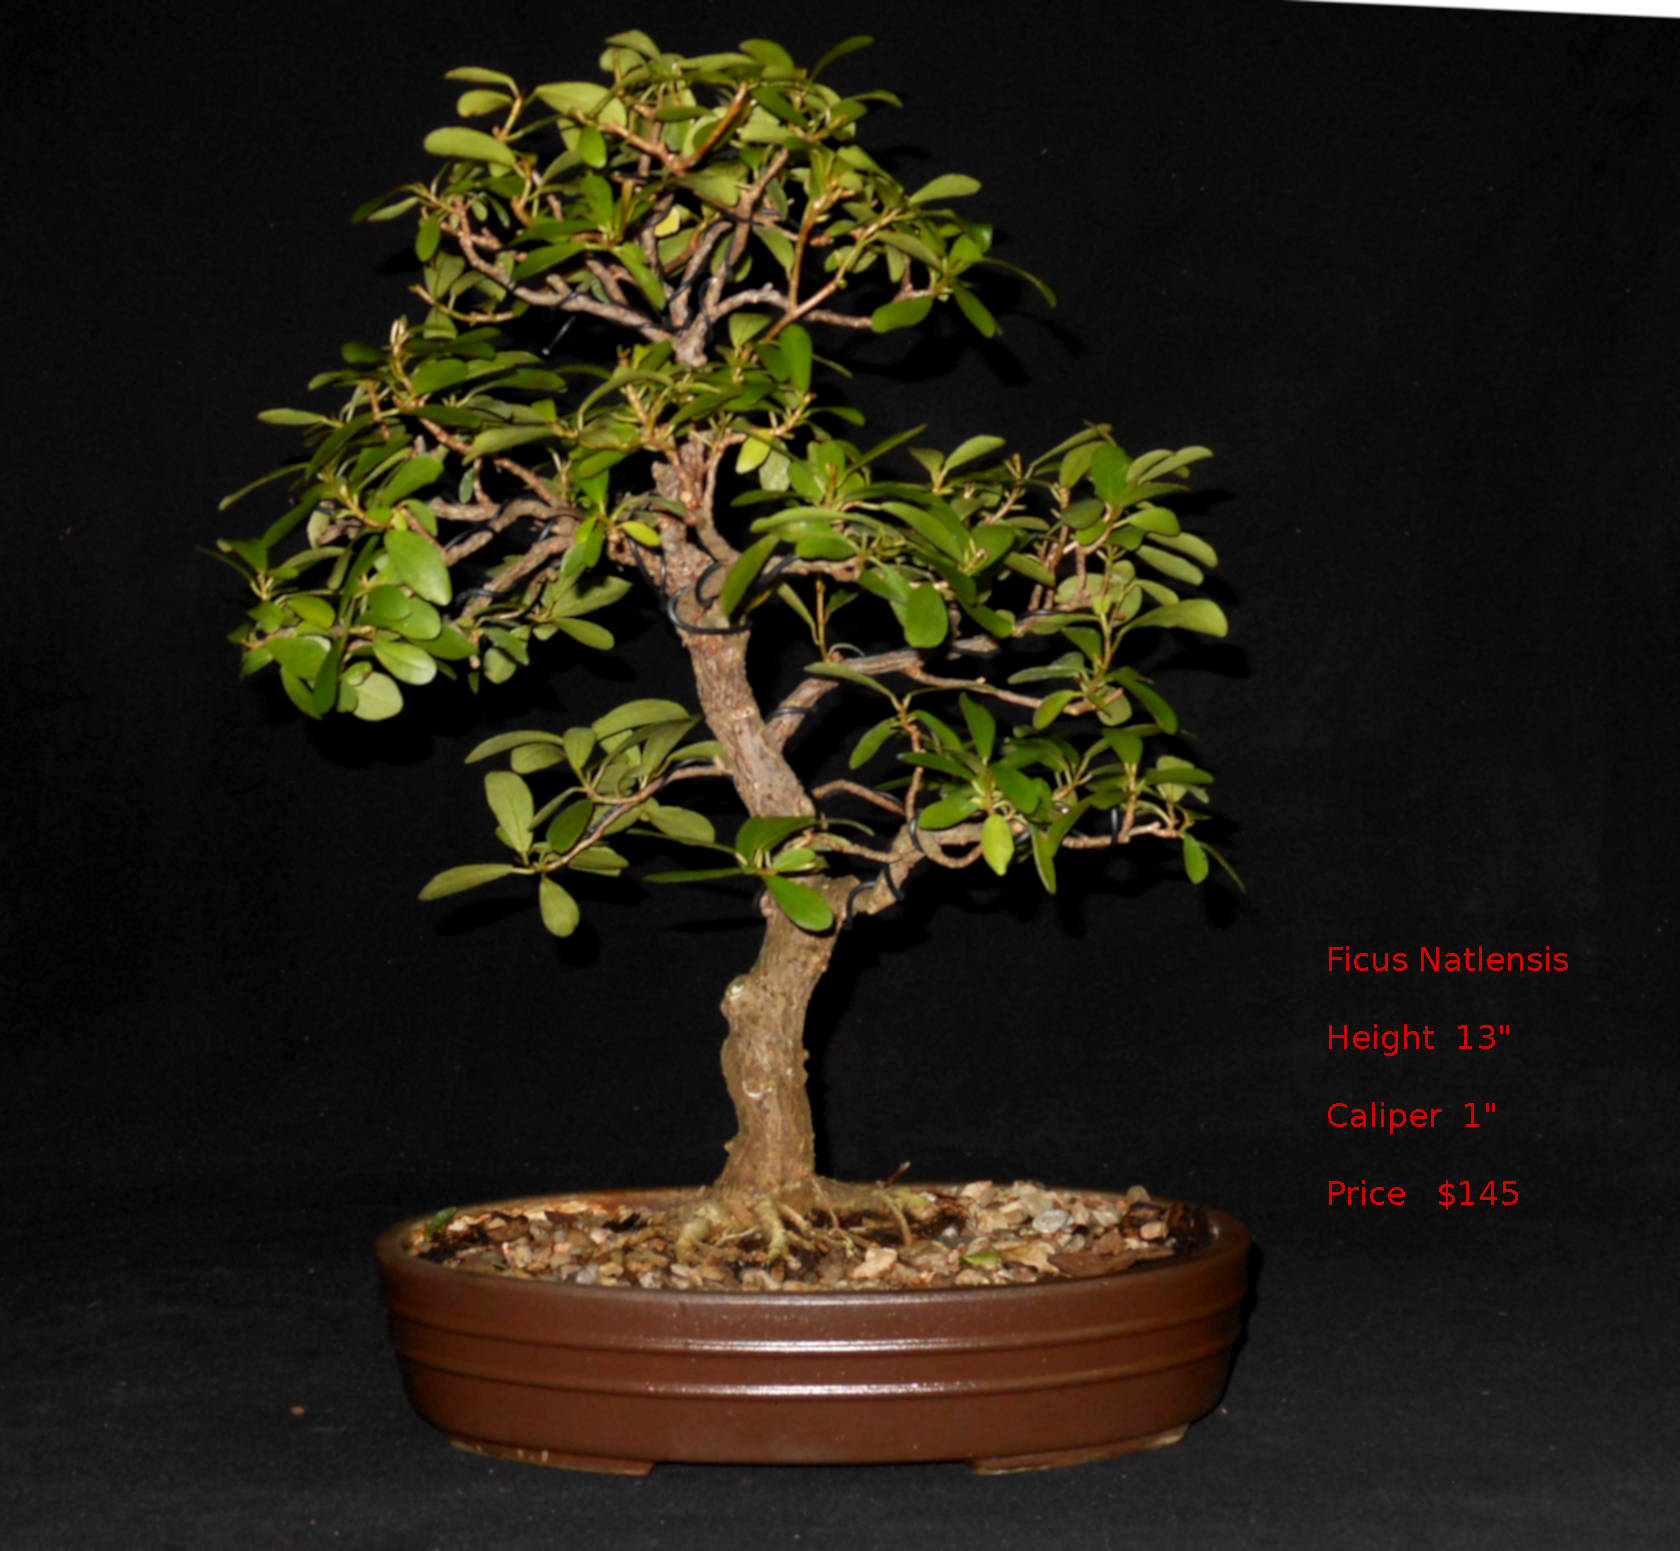 FN7317 Ficus Natlensis